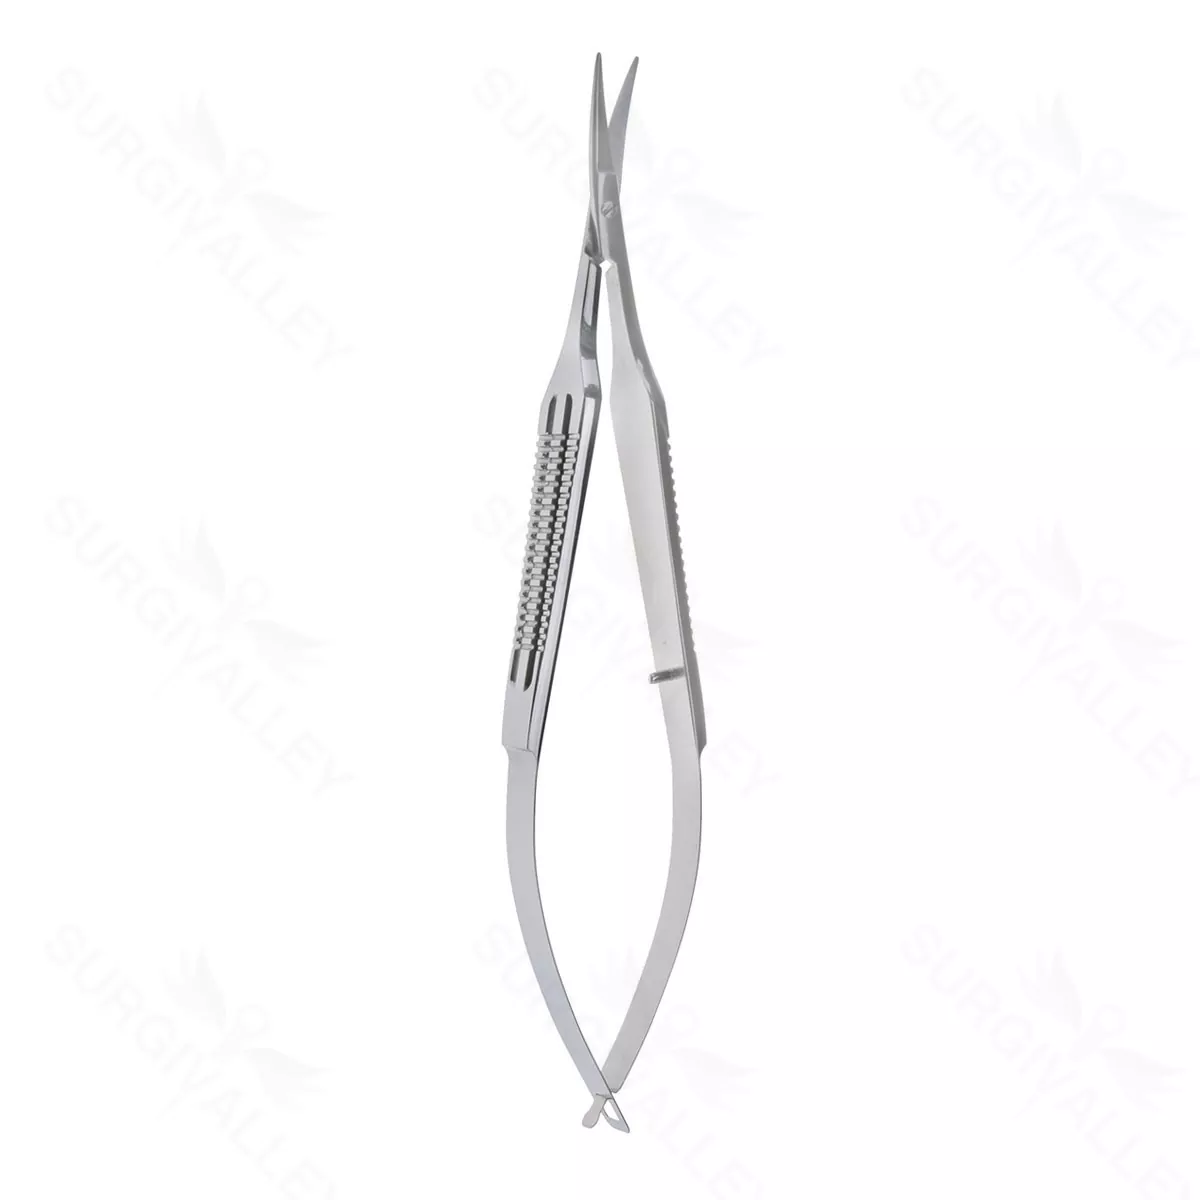 Castro Keratoplasty Scissors – wide Handle med